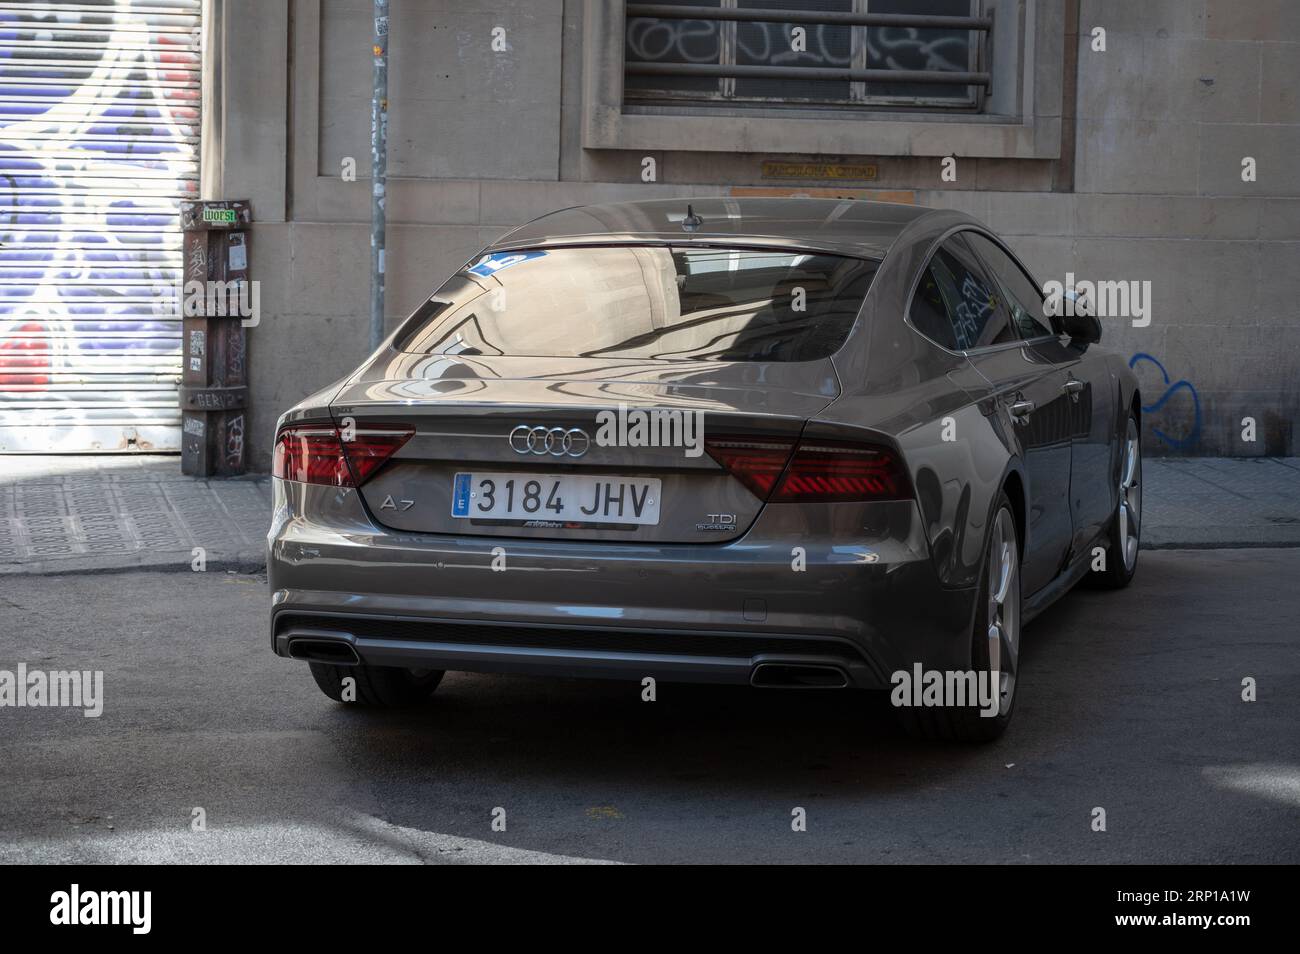 Une apparence terne et grisâtre d'une luxueuse berline Audi A7 garée dans la rue de la ville Banque D'Images